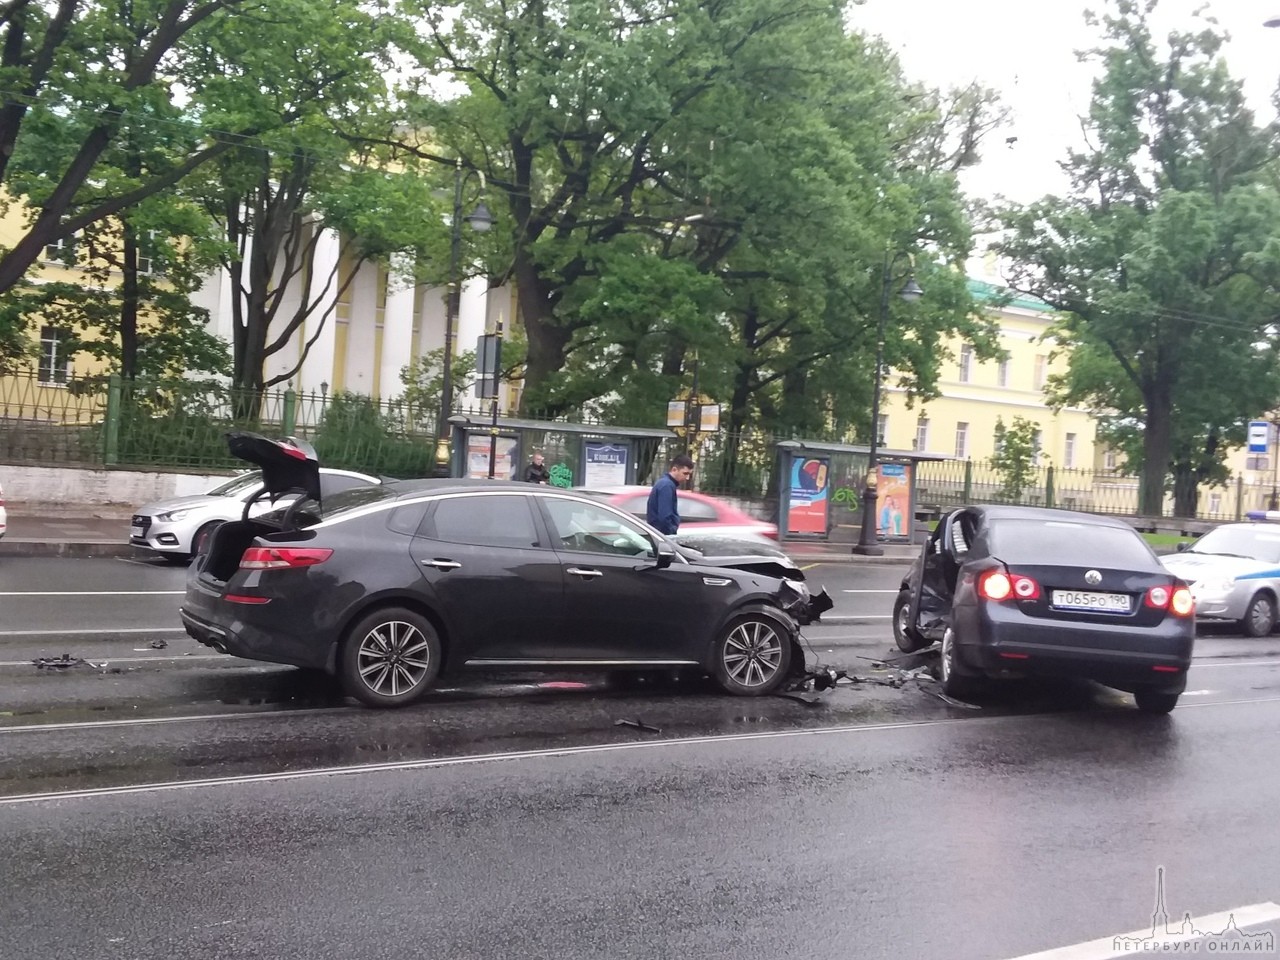 Напротив Мариининской больницы КИА подбила разворачивающийся Volkswagen. Машины уже убрали с центра...